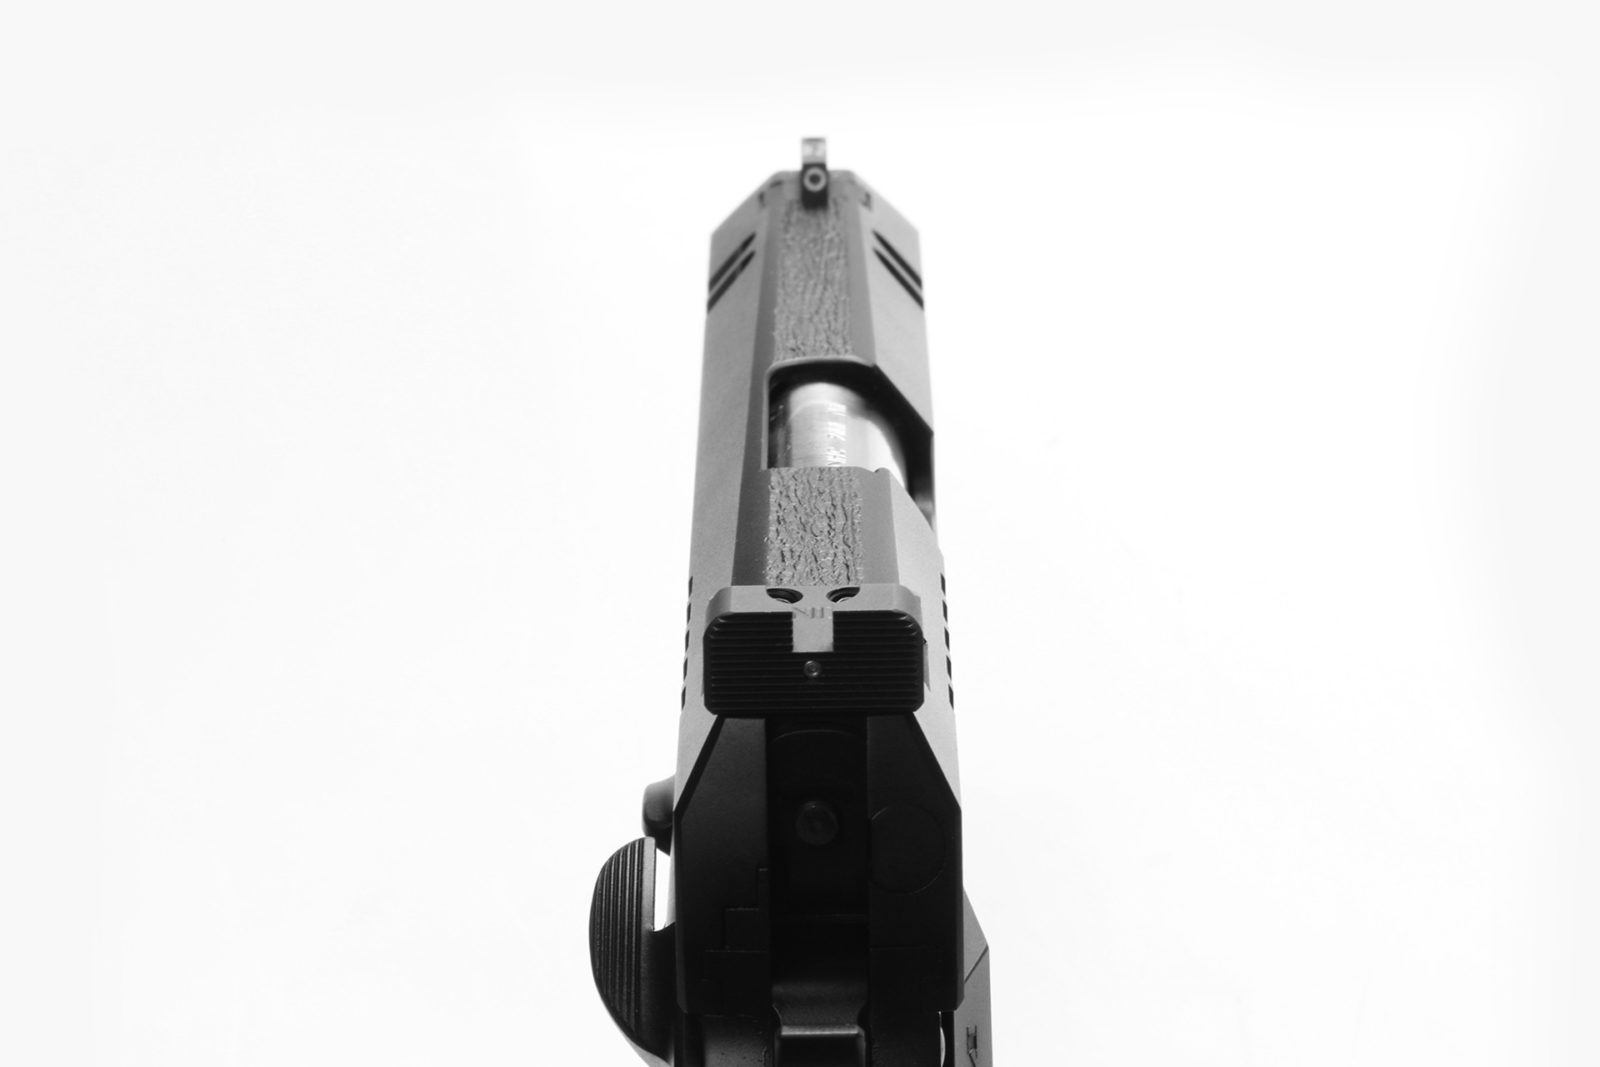 Nighthawk Custom Tri-Cut Carry 1911 Pistol